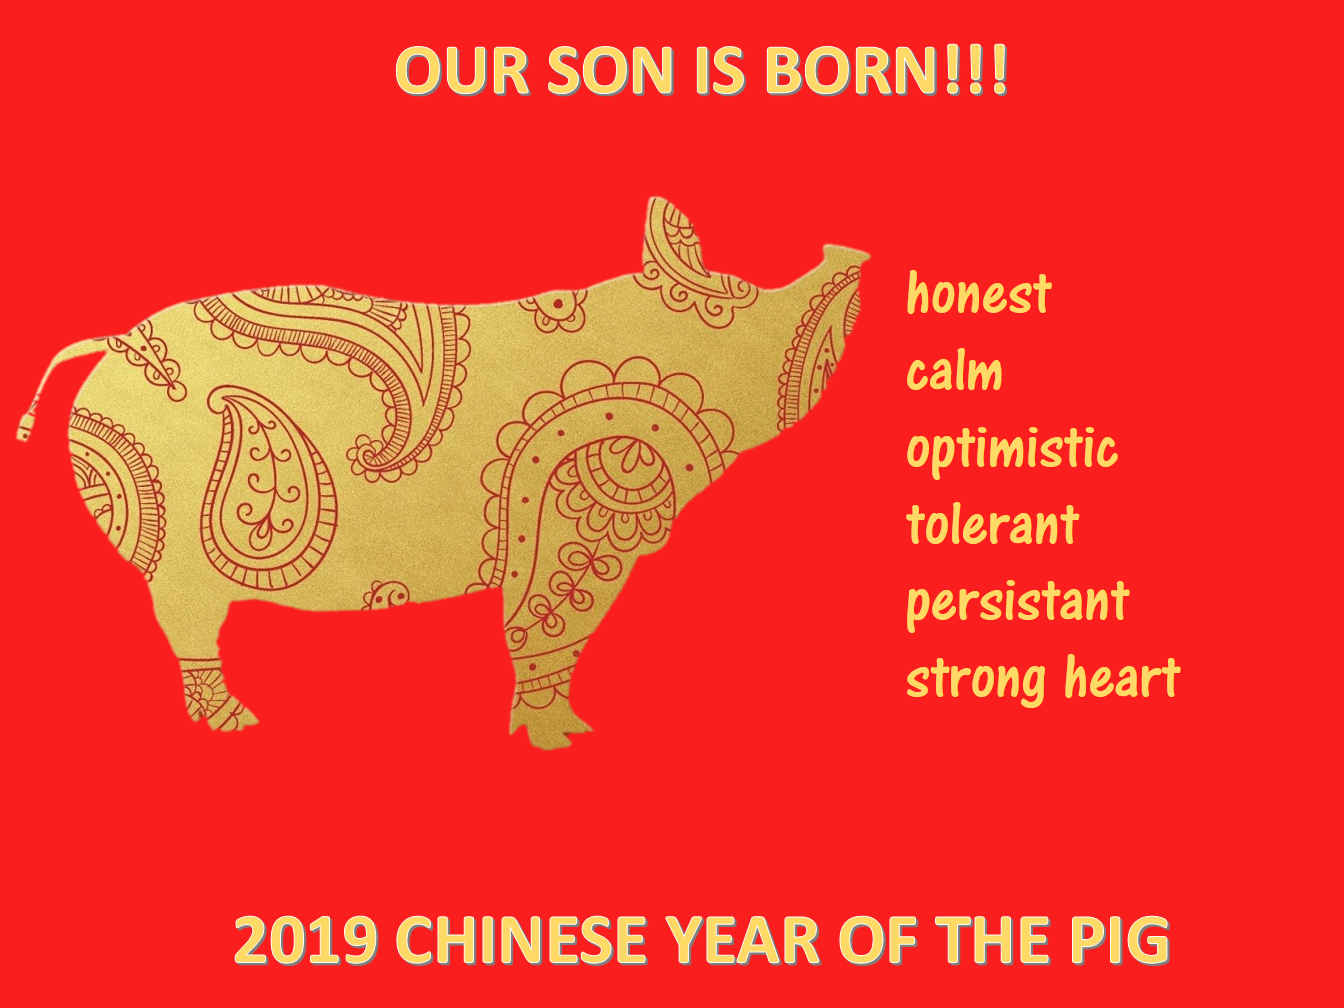 中国新年猪年儿子出生 main image